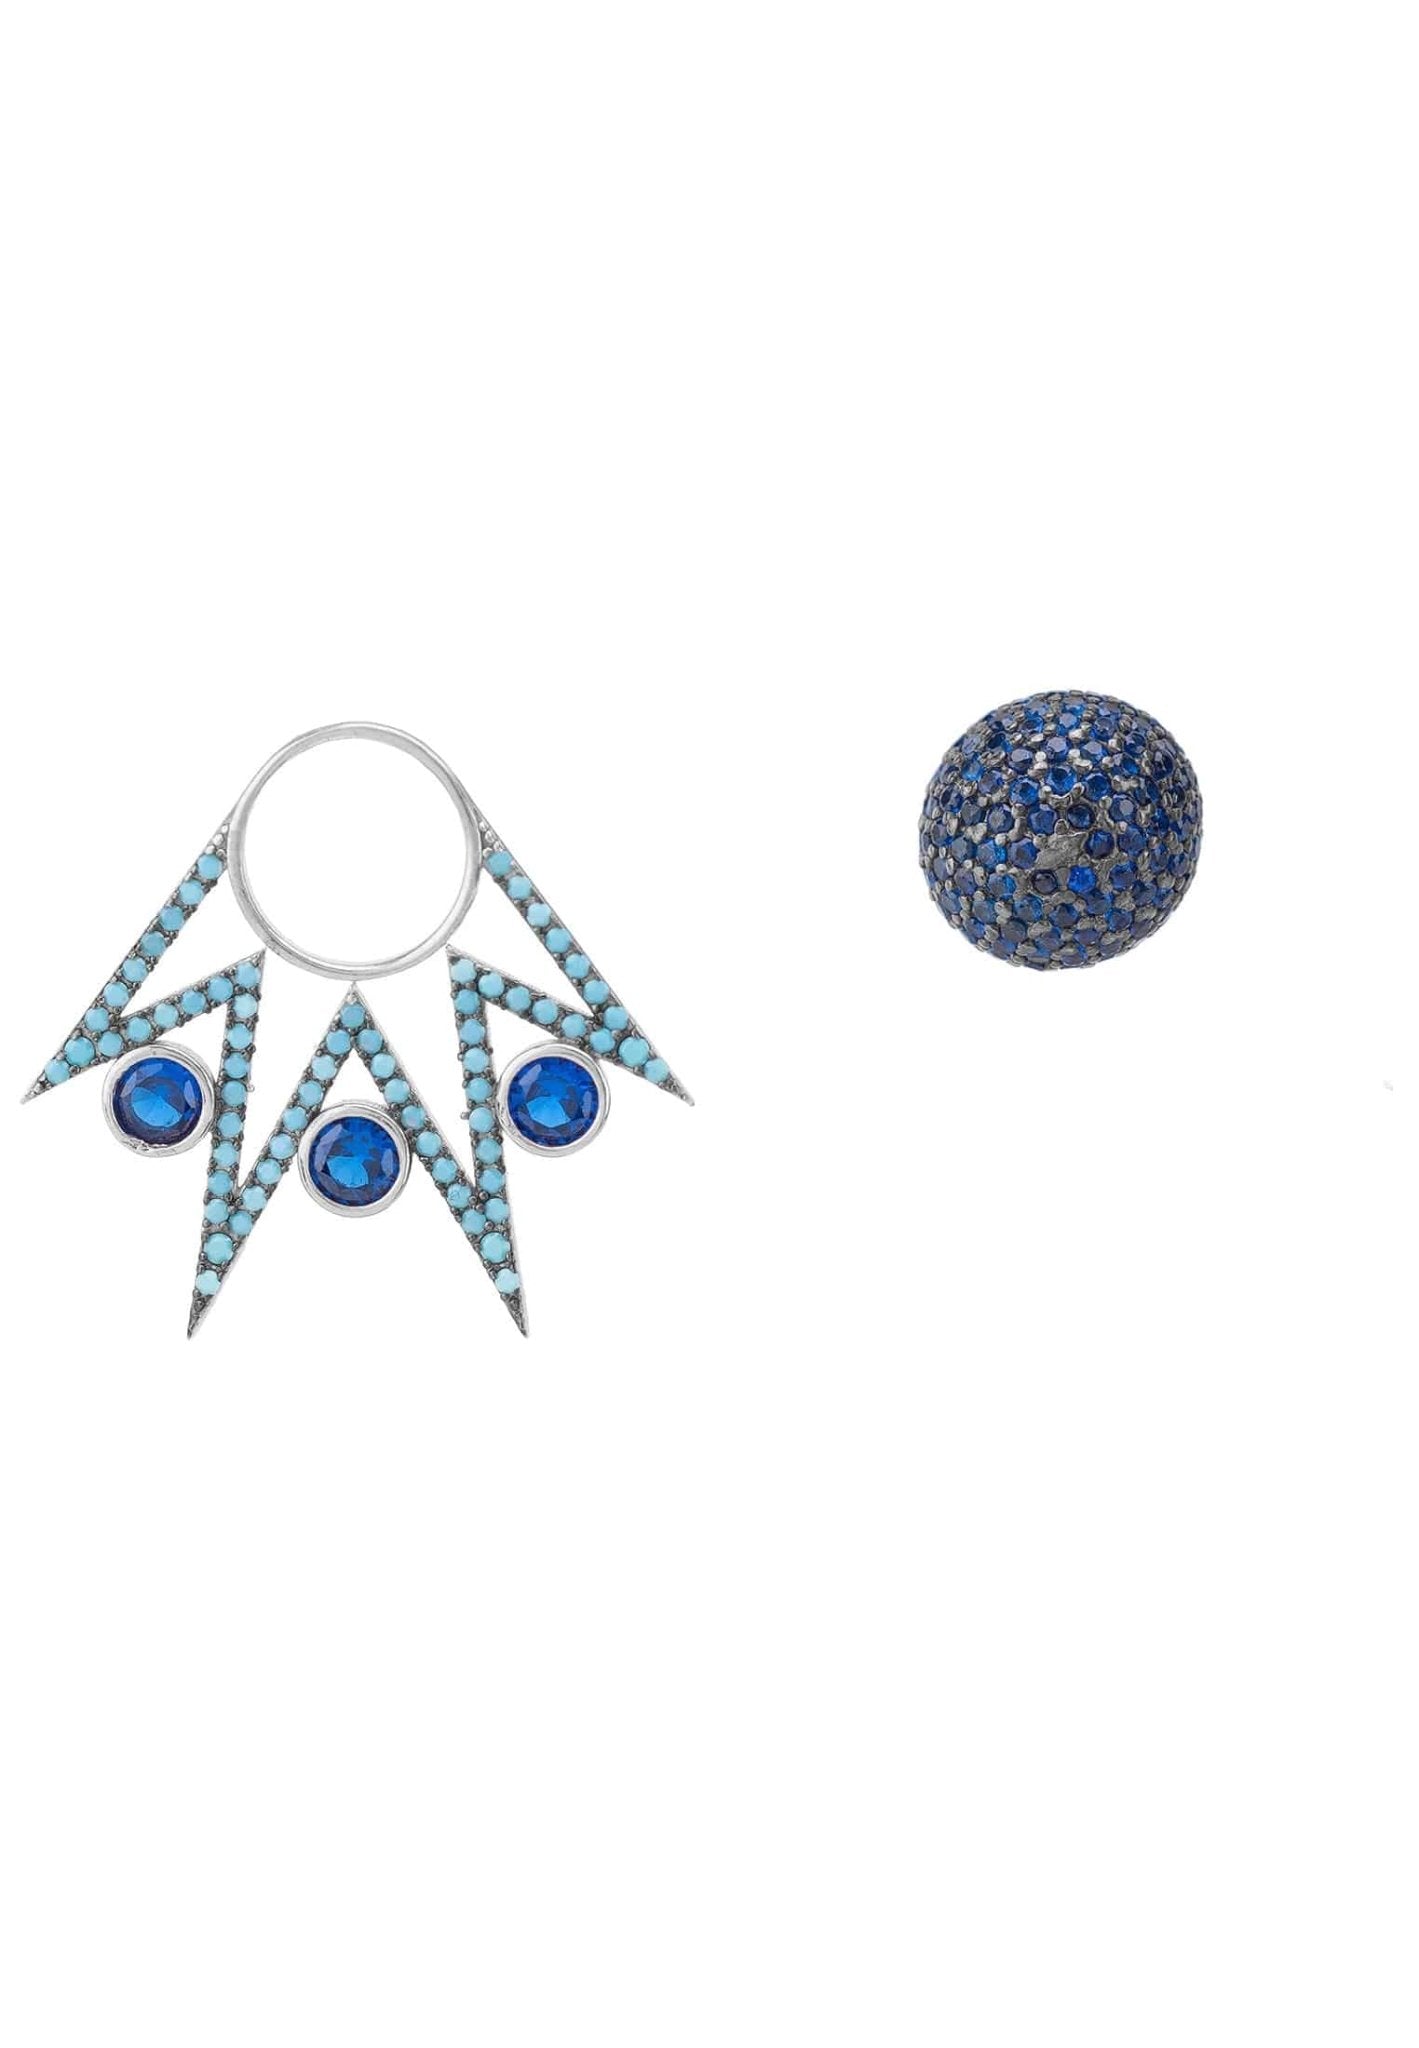 Jester Ear Jacket Convertible Earrings Blue Silver - LATELITA Earrings